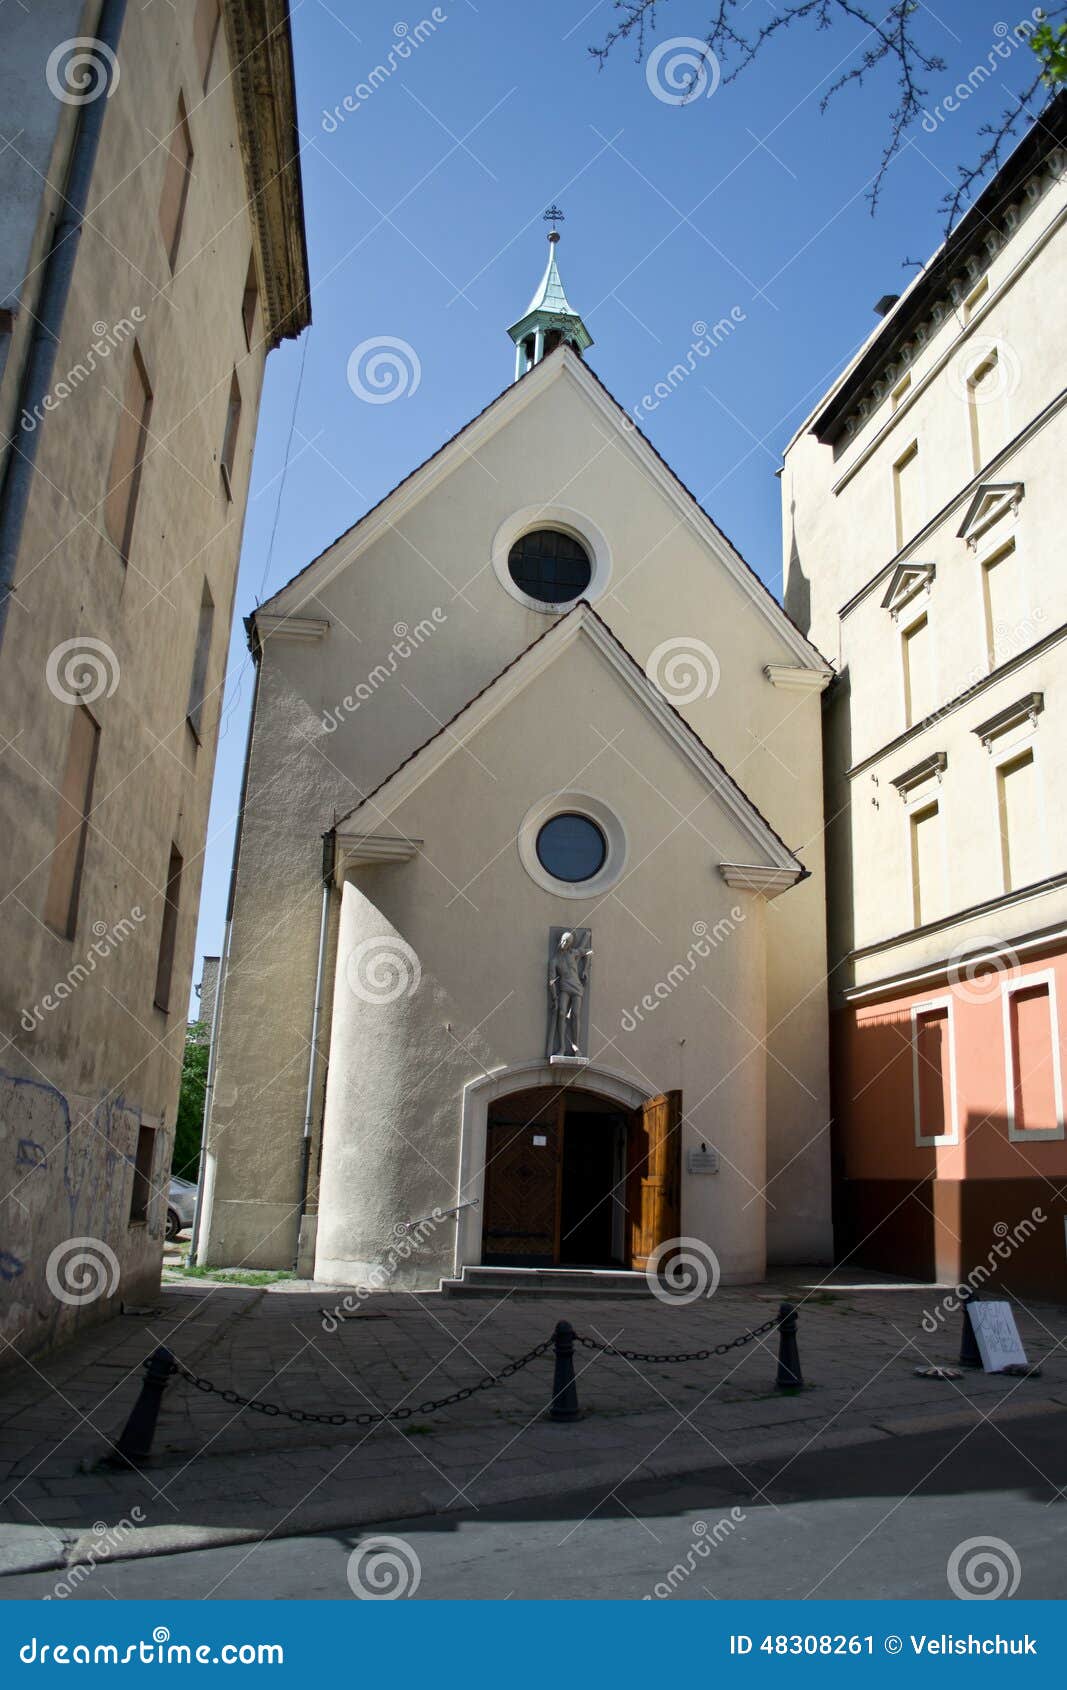 Kościół w Opolskim, Polska - miasto architektura